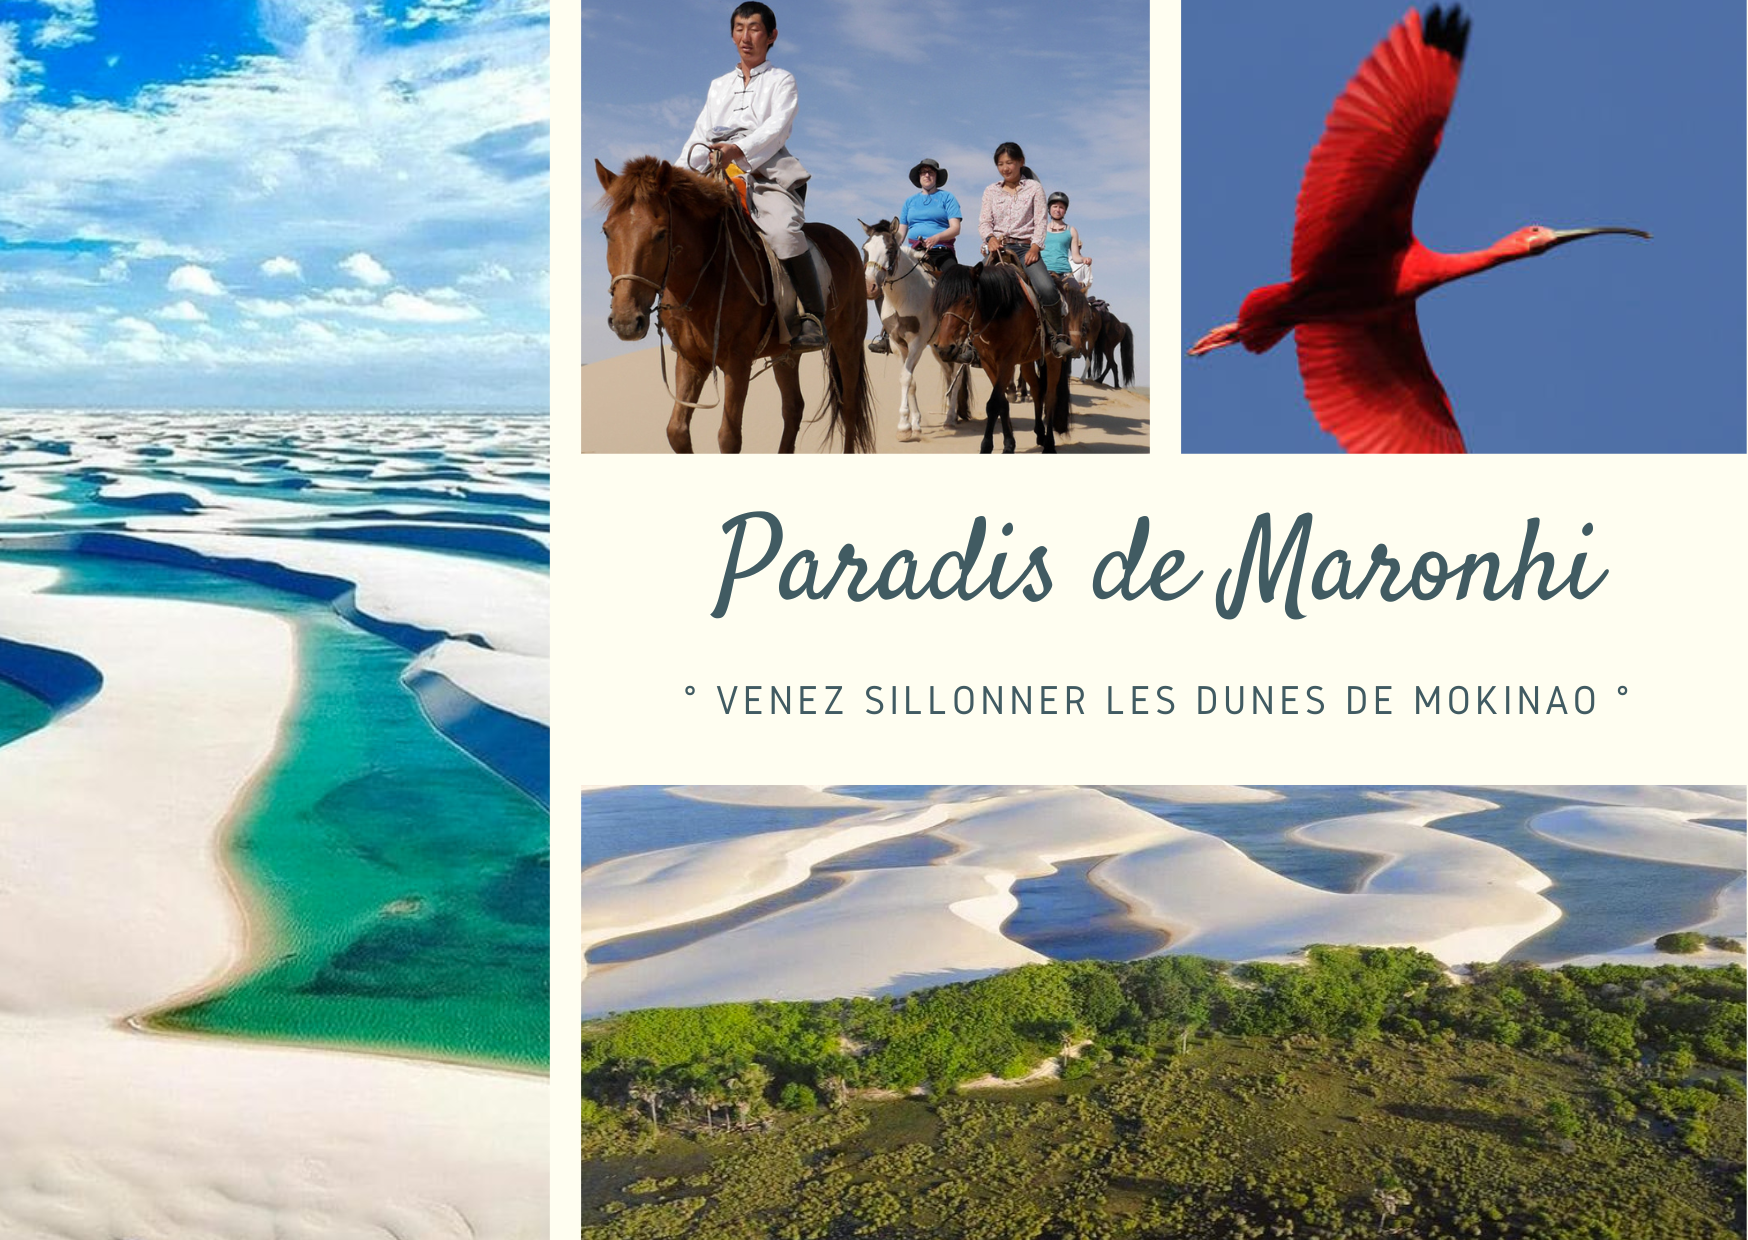 Paradis de Maronhi : Dunes de Mokinao